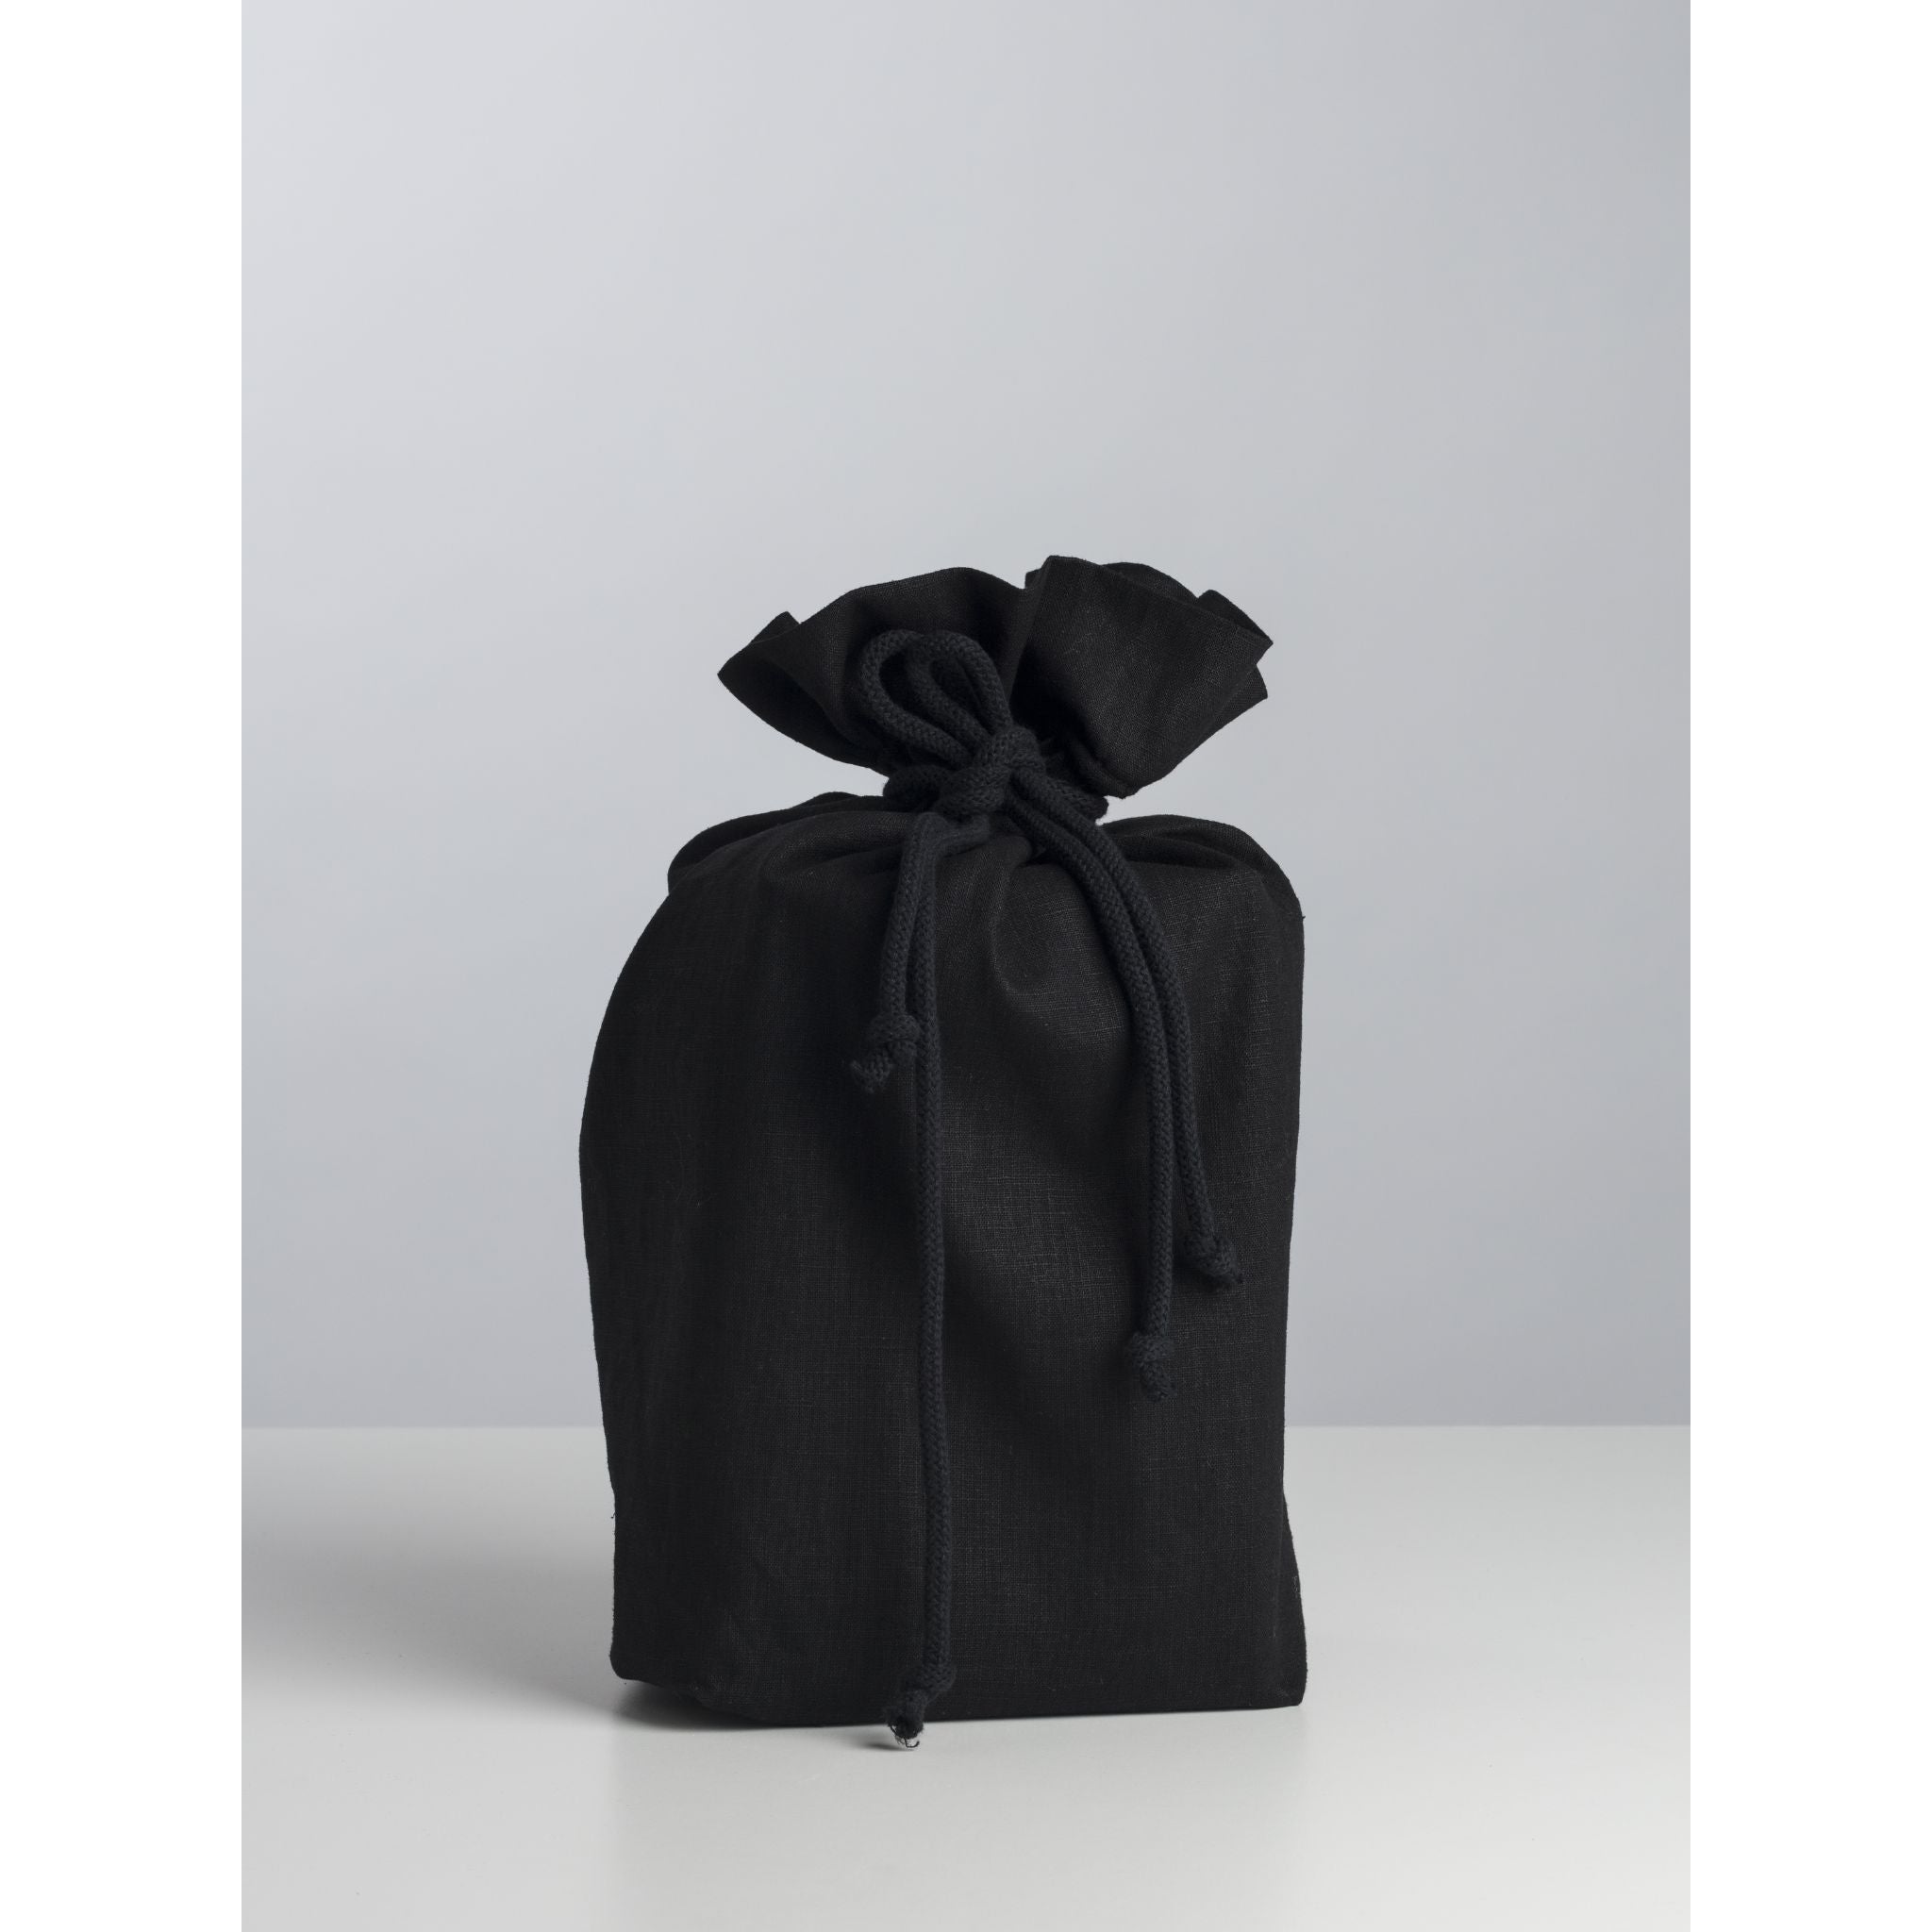 Paper urn with linen bag Black